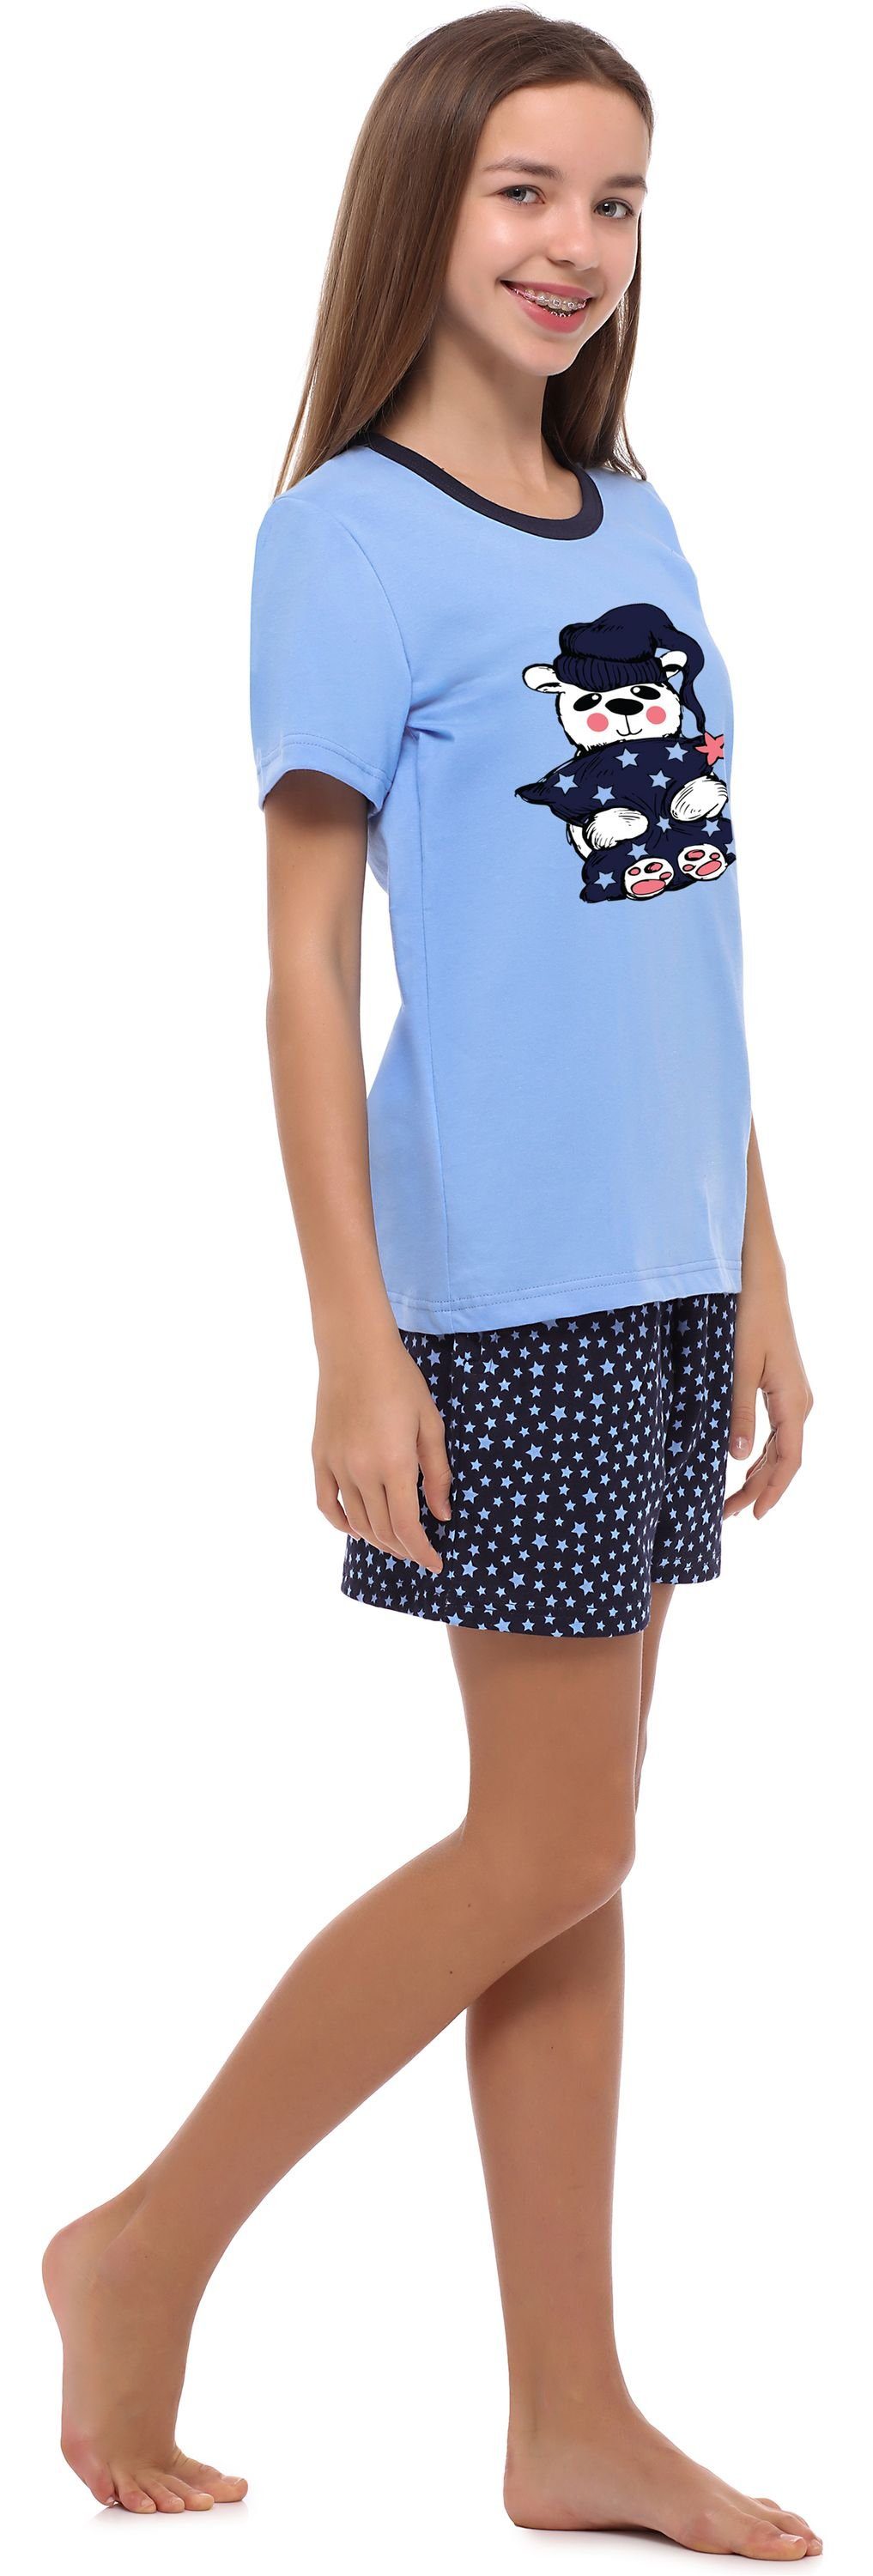 Mädchen Jugend Merry Style Schlafanzug MS10-241 Schlafanzug Blau/Sterne